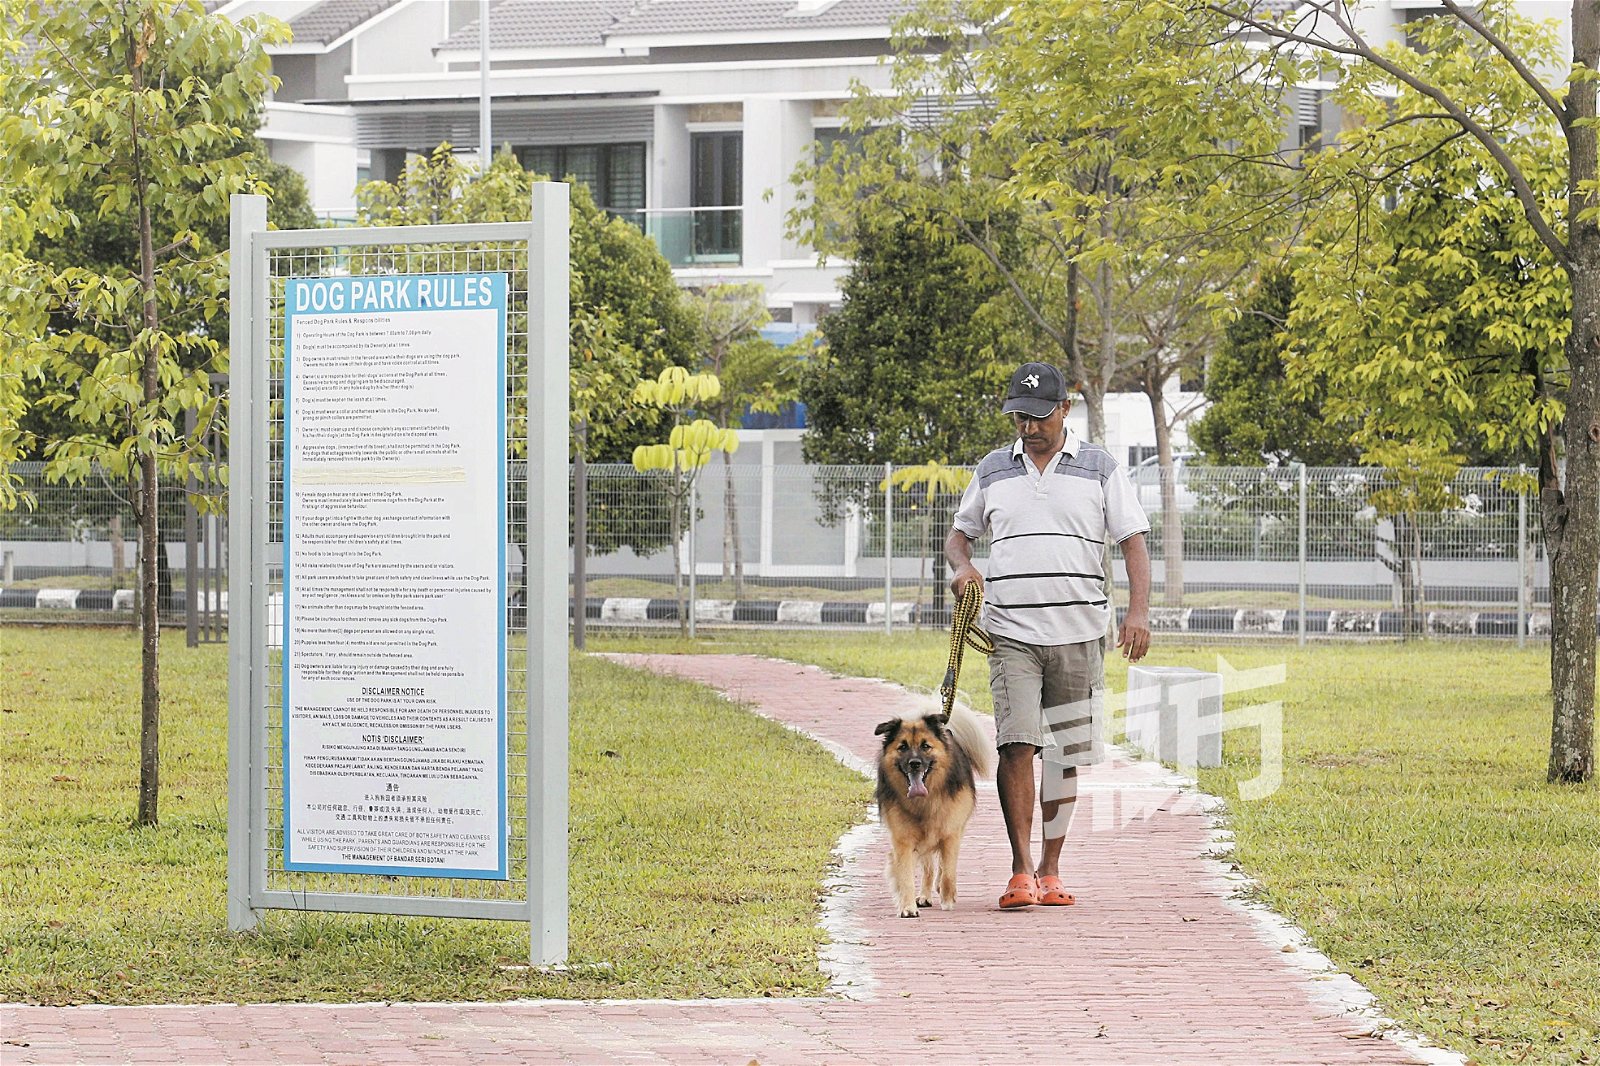 狗儿公园设定许多规则，包括必须用绳索牵引狗儿散步，以保护其他狗儿和狗主的安全。